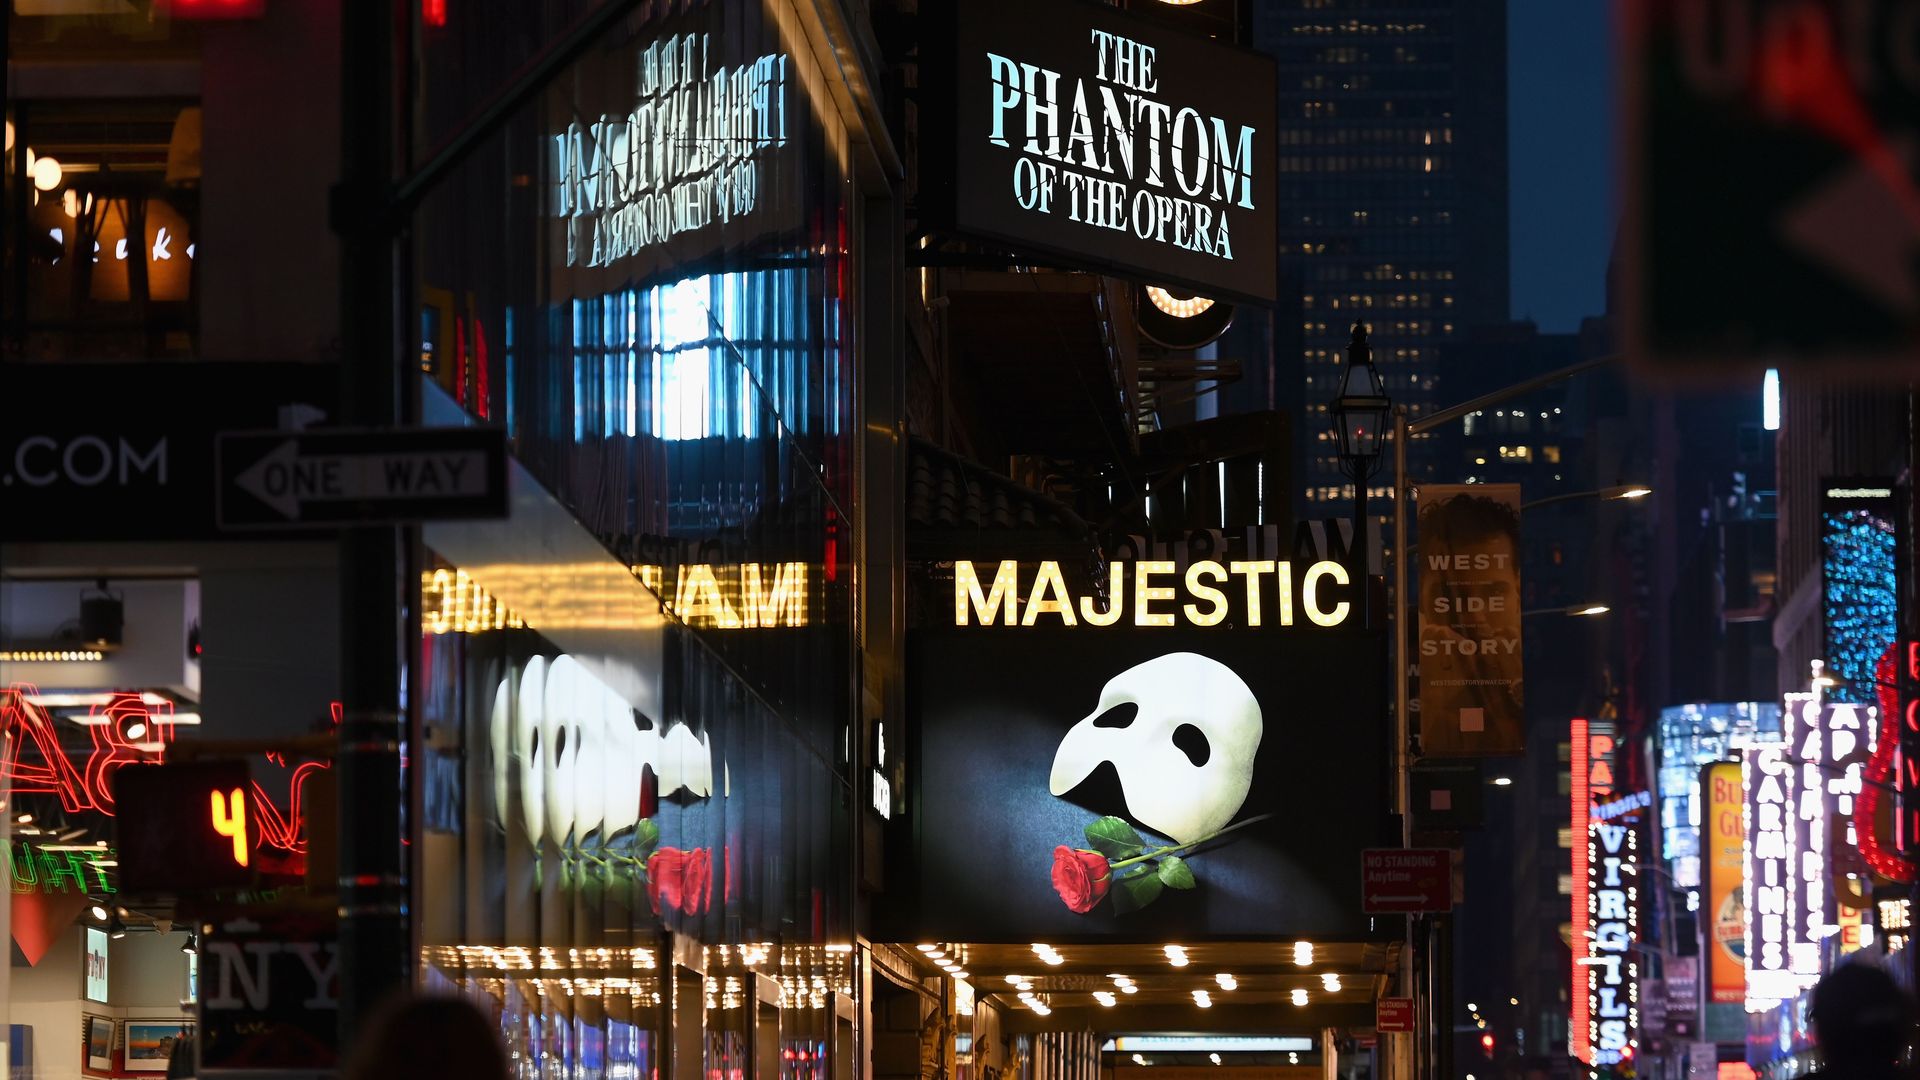 Vandre retort Midler Phantom of the Opera" is leaving Broadway after 35 years